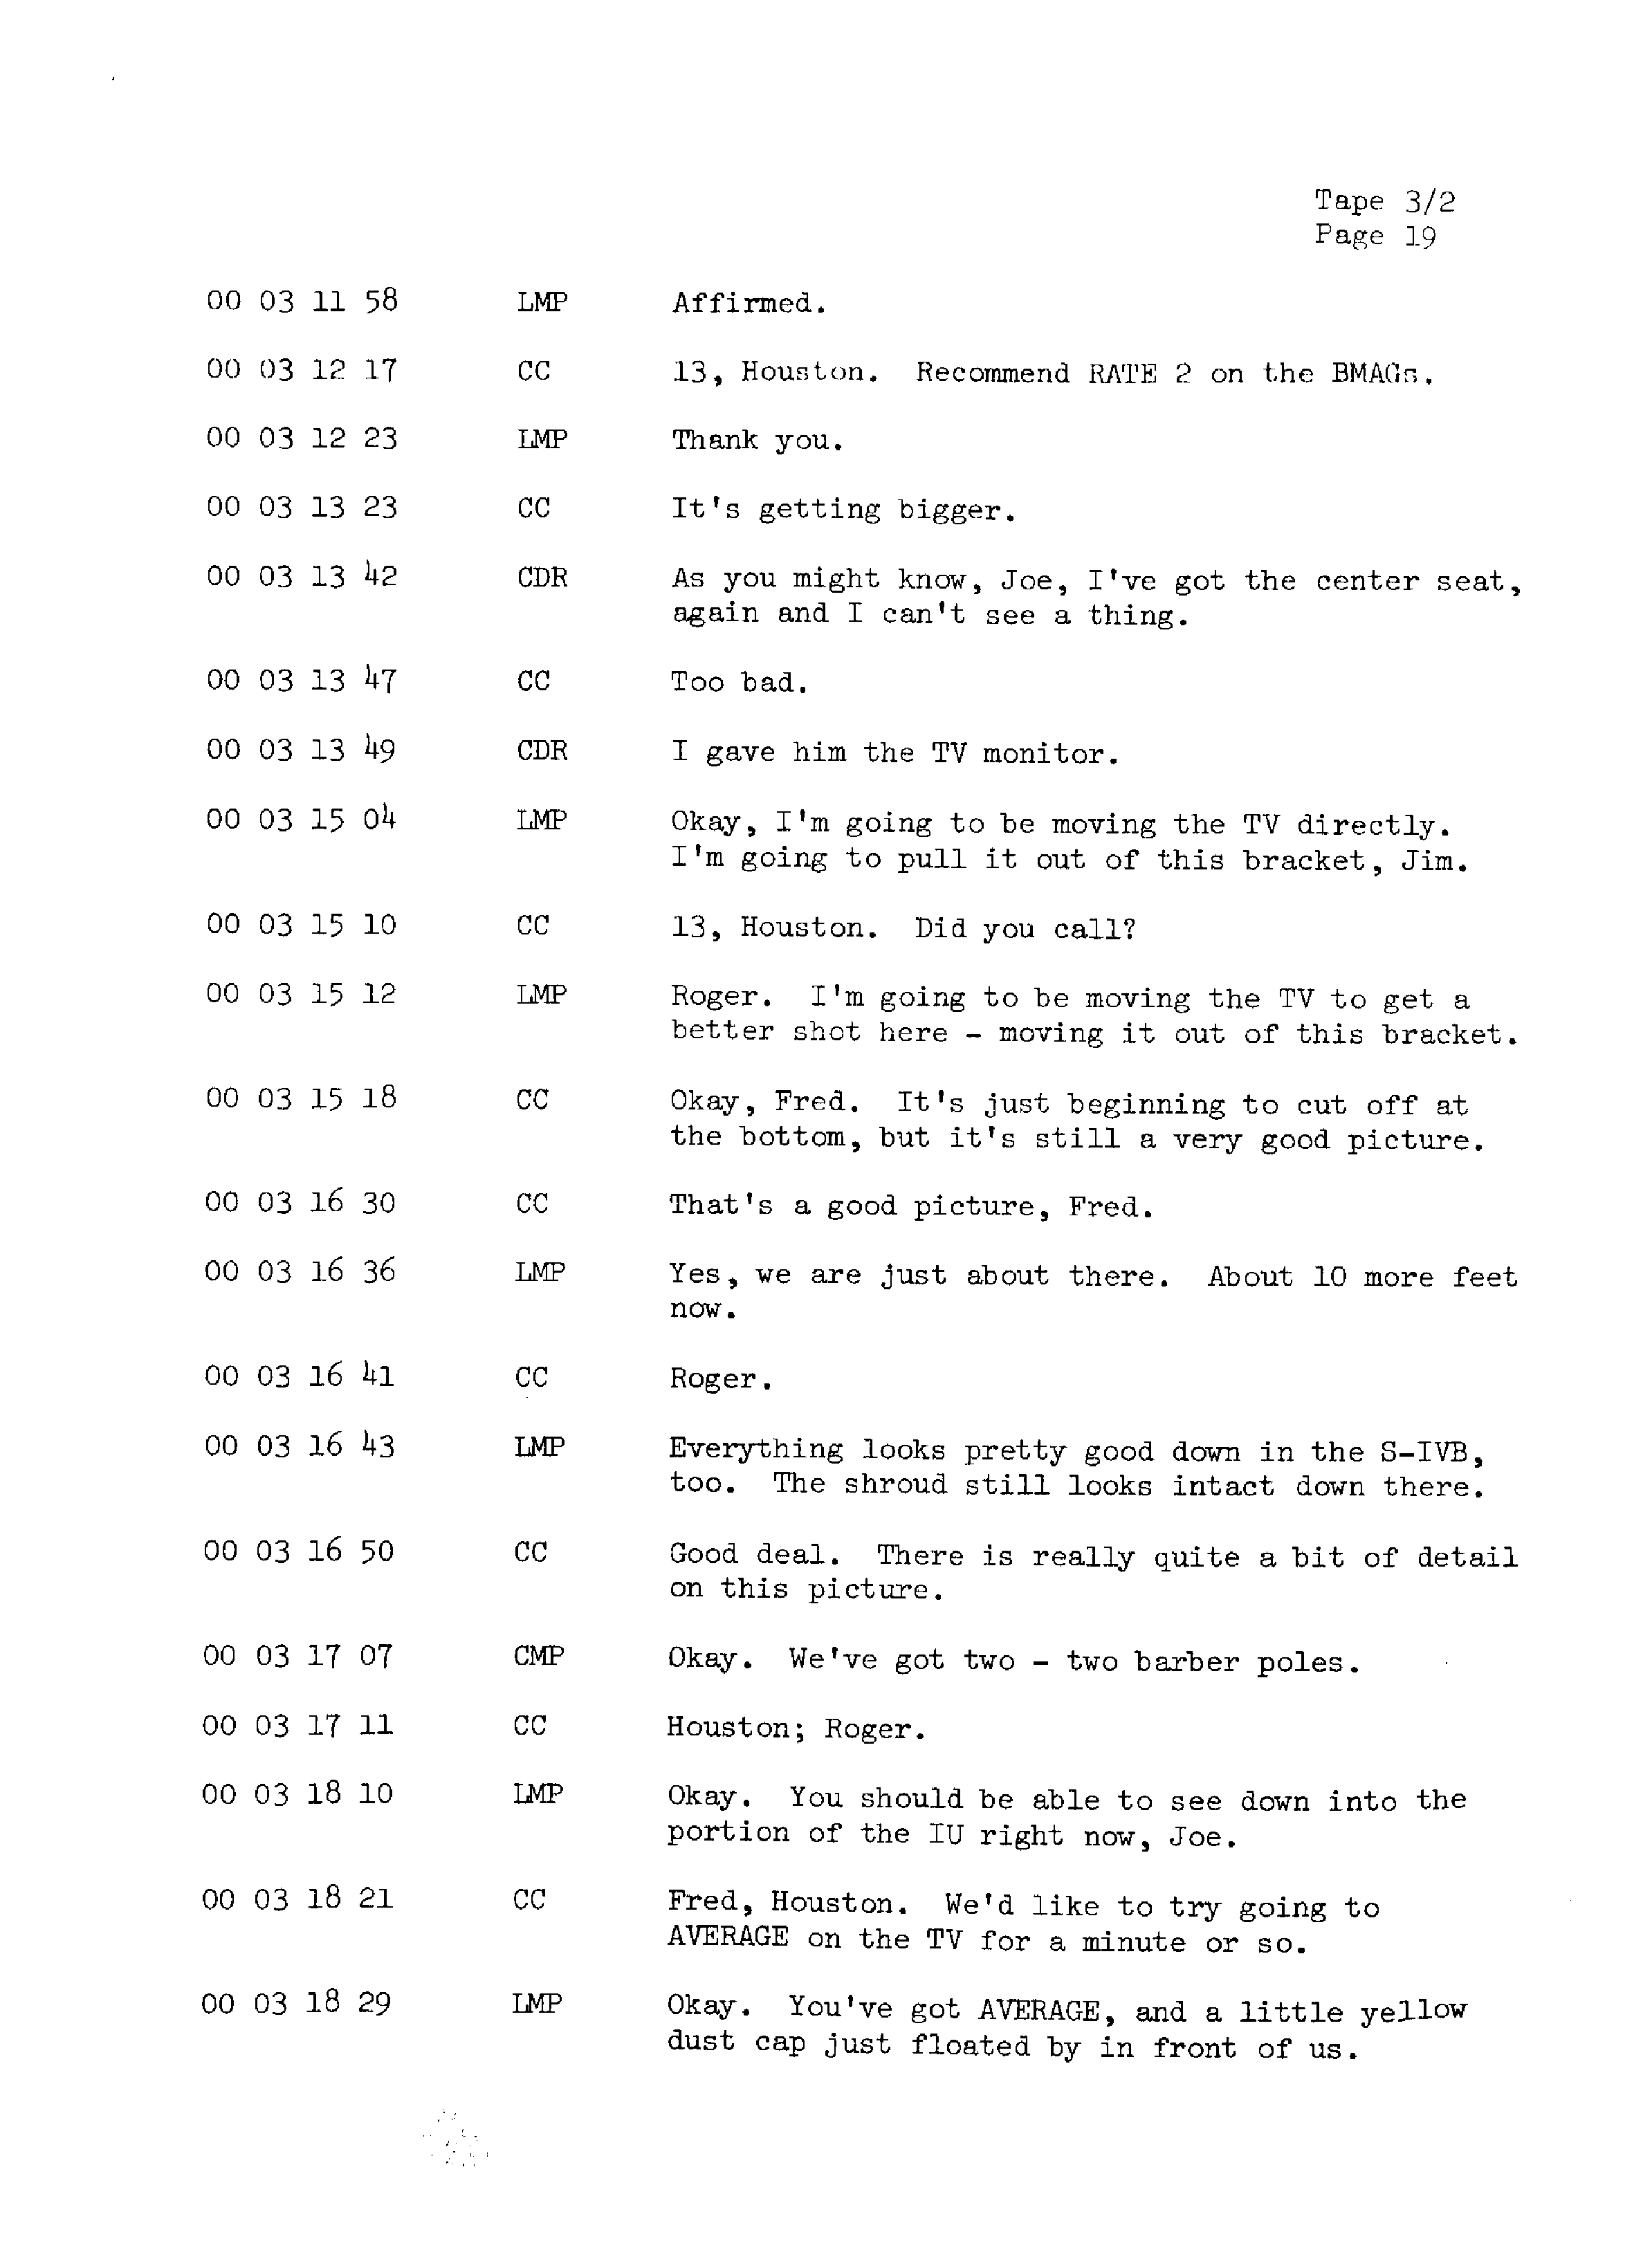 Page 26 of Apollo 13’s original transcript